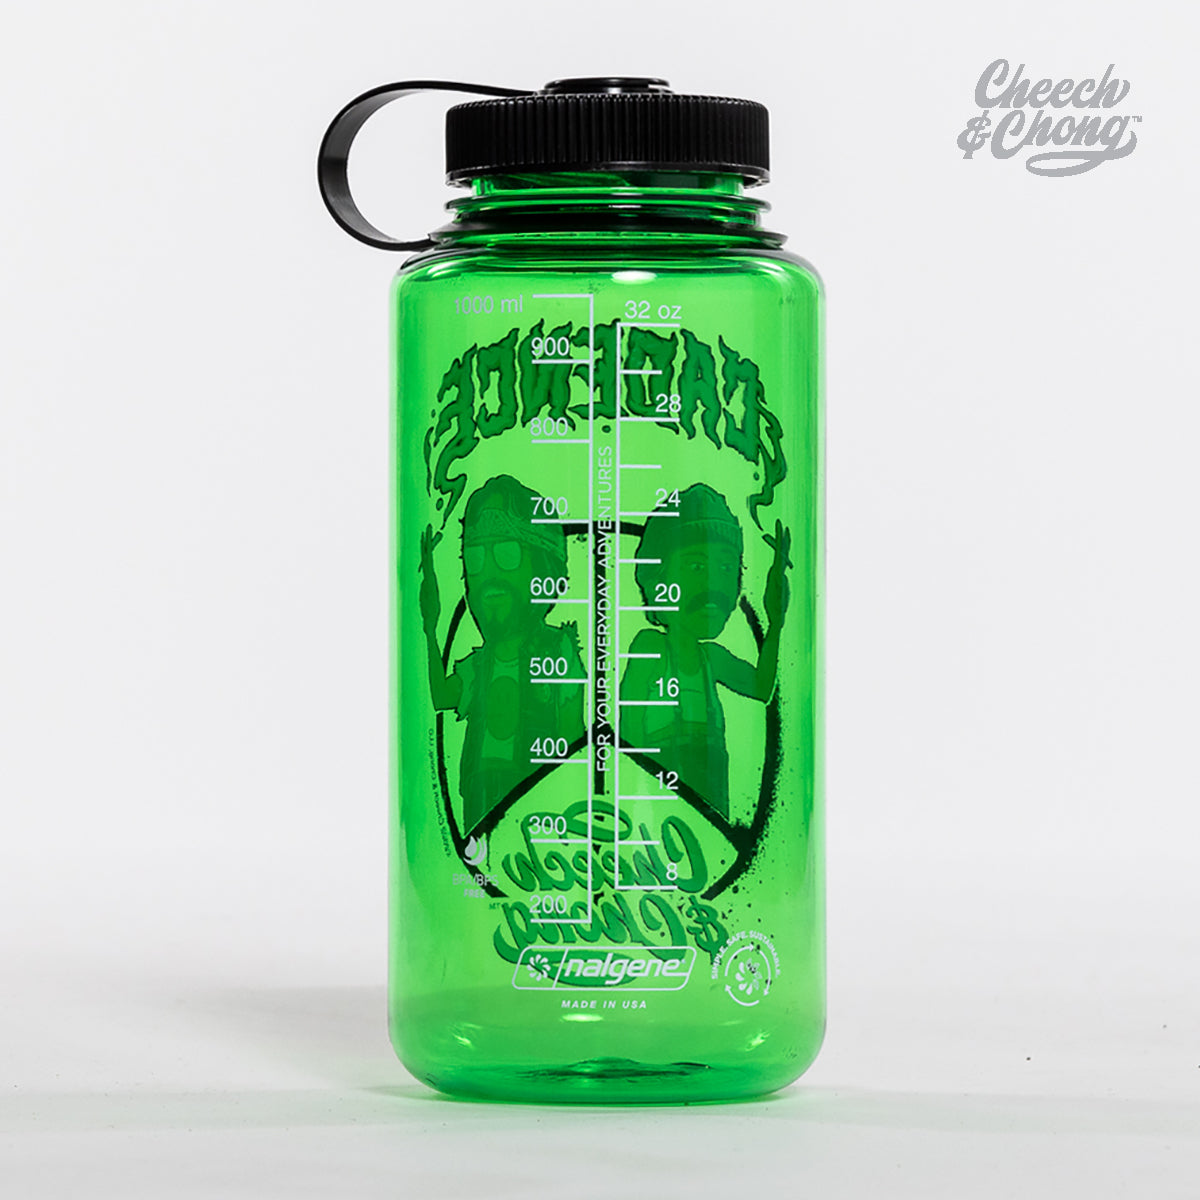 Cheech & Chong Nalgene Bottle [Green]